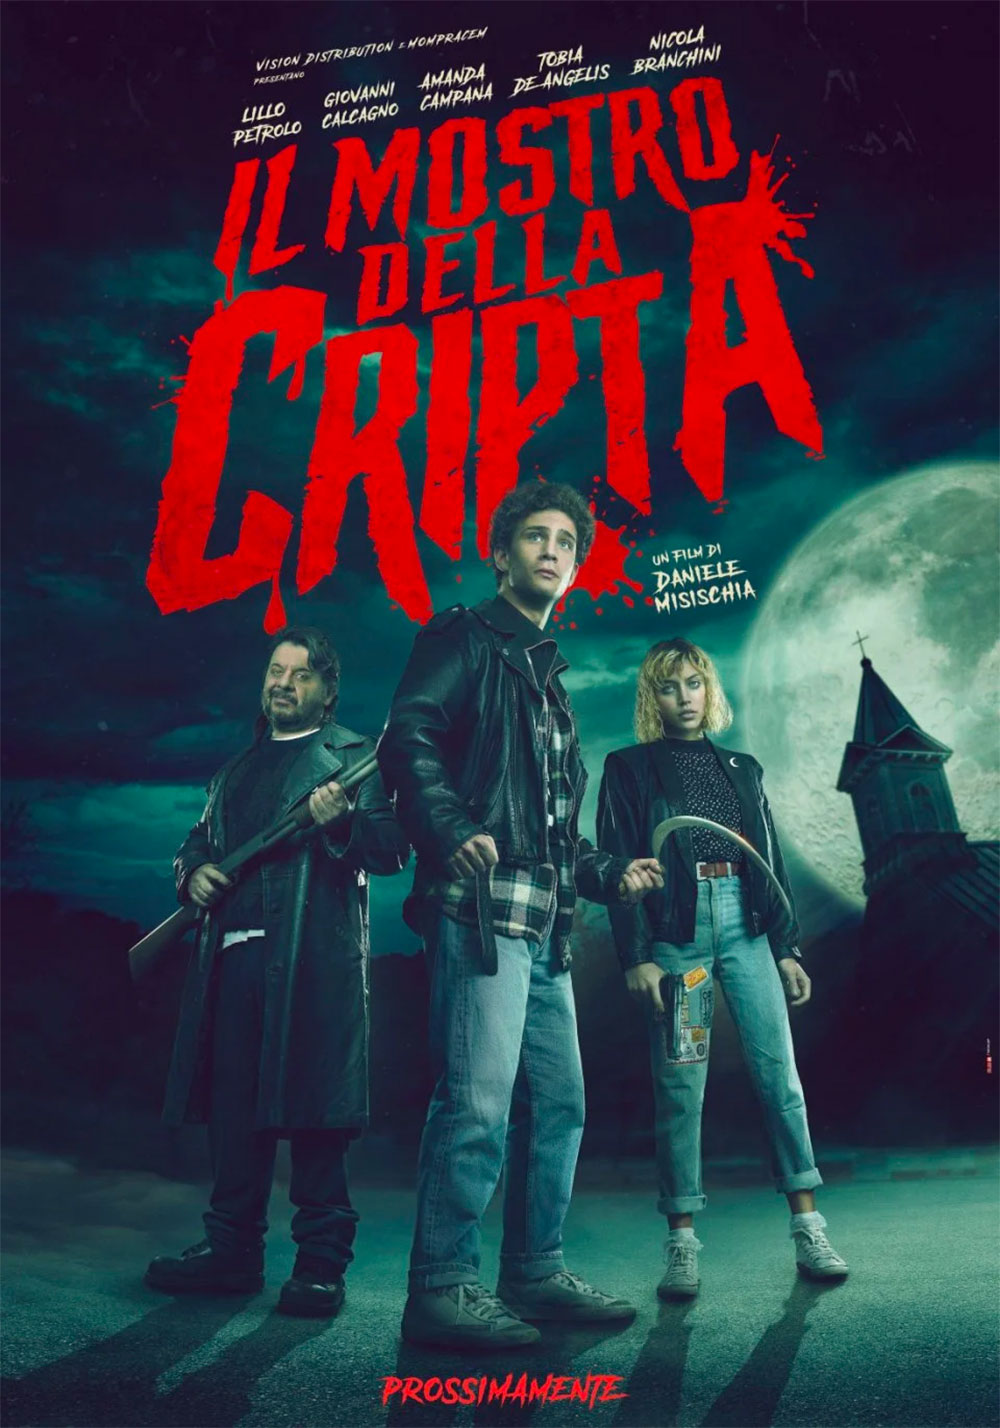  Dall'articolo: Il mostro della cripta, il primo poster del film.